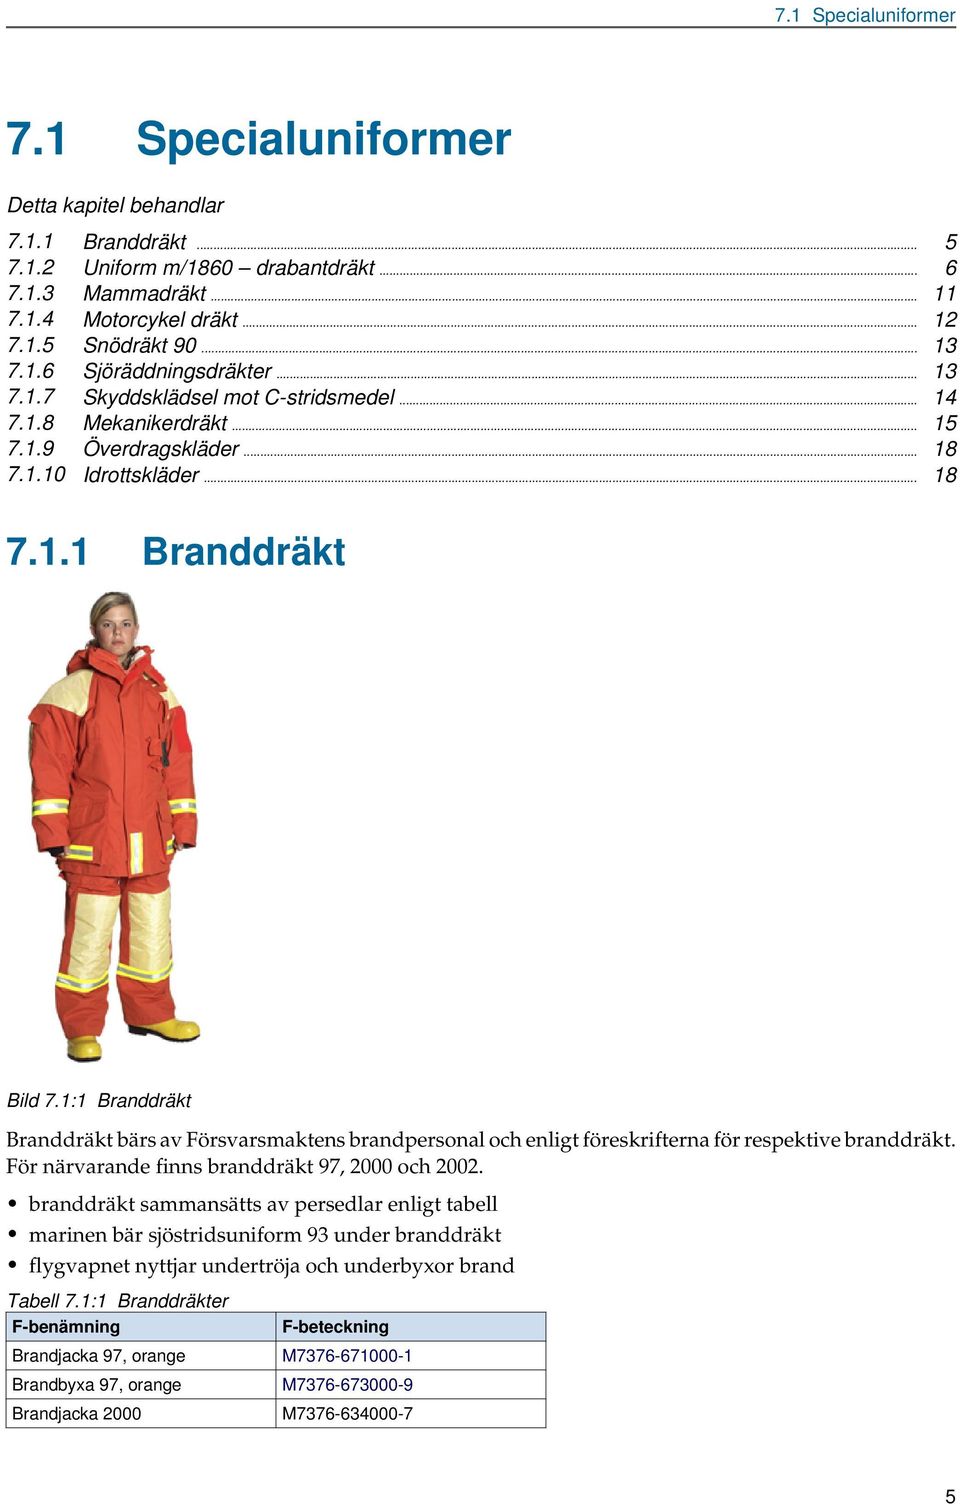 1:1 Branddräkt Branddräkt bärs av Försvarsmaktens brandpersonal och enligt föreskrifterna för respektive branddräkt. För närvarande finns branddräkt 97, 2000 och 2002.